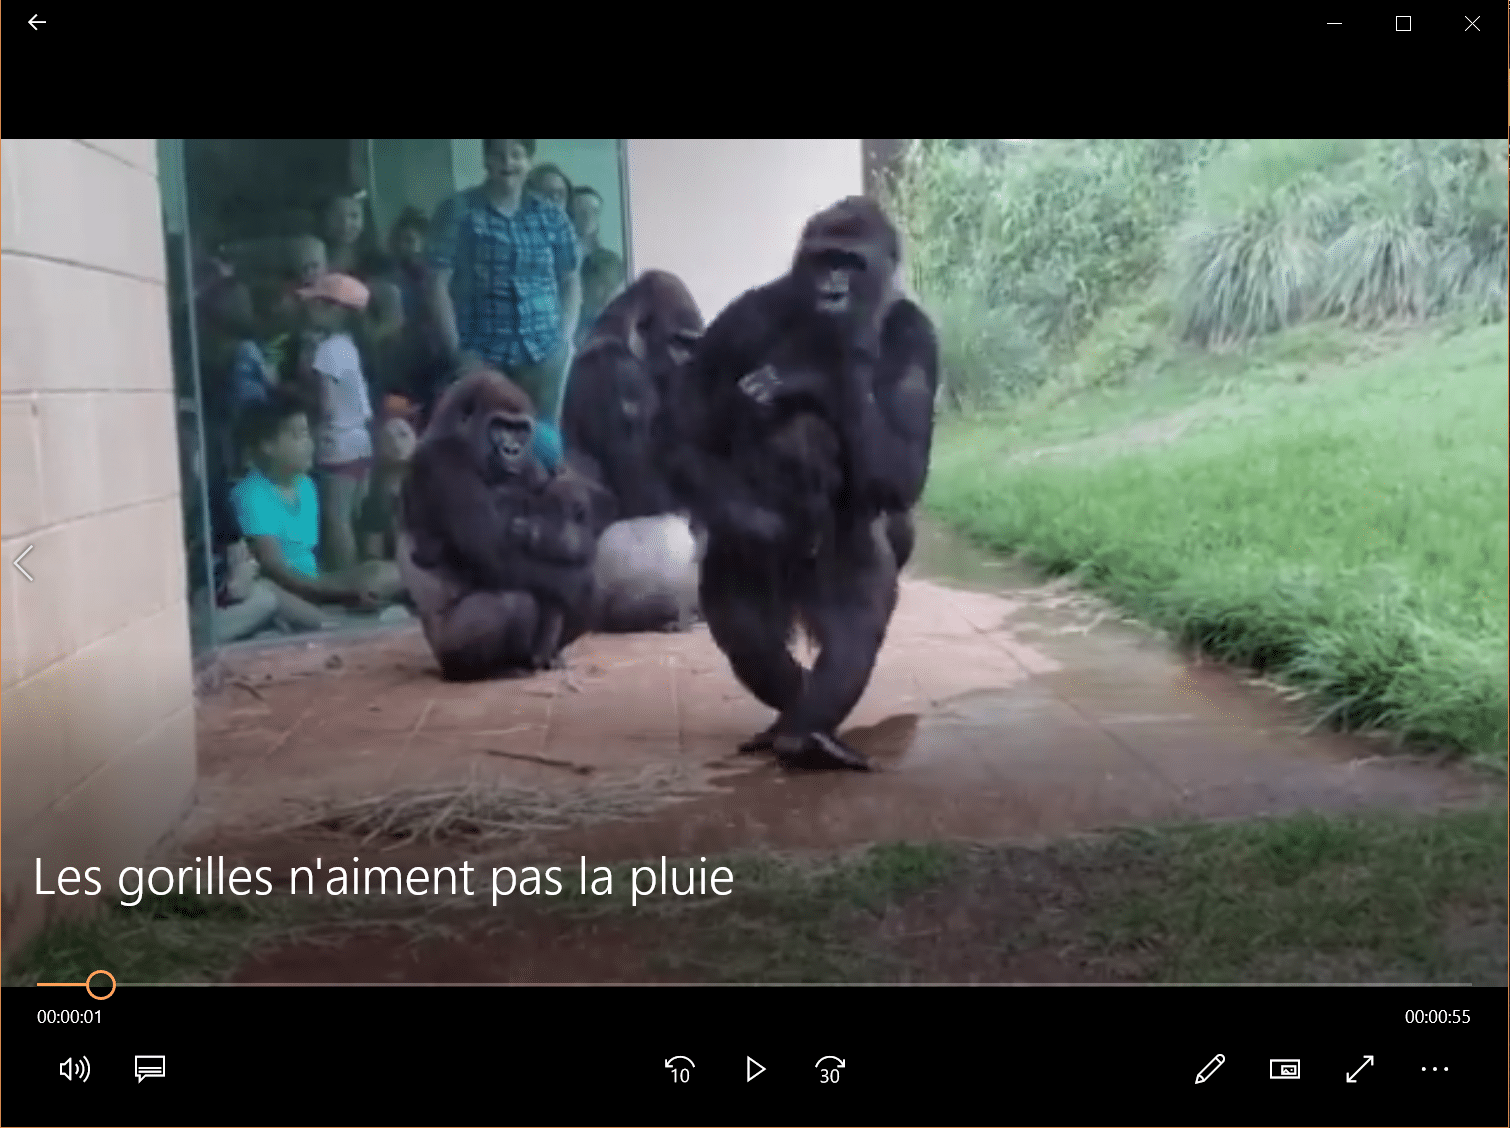 Les gorilles n'aiment pas la pluie